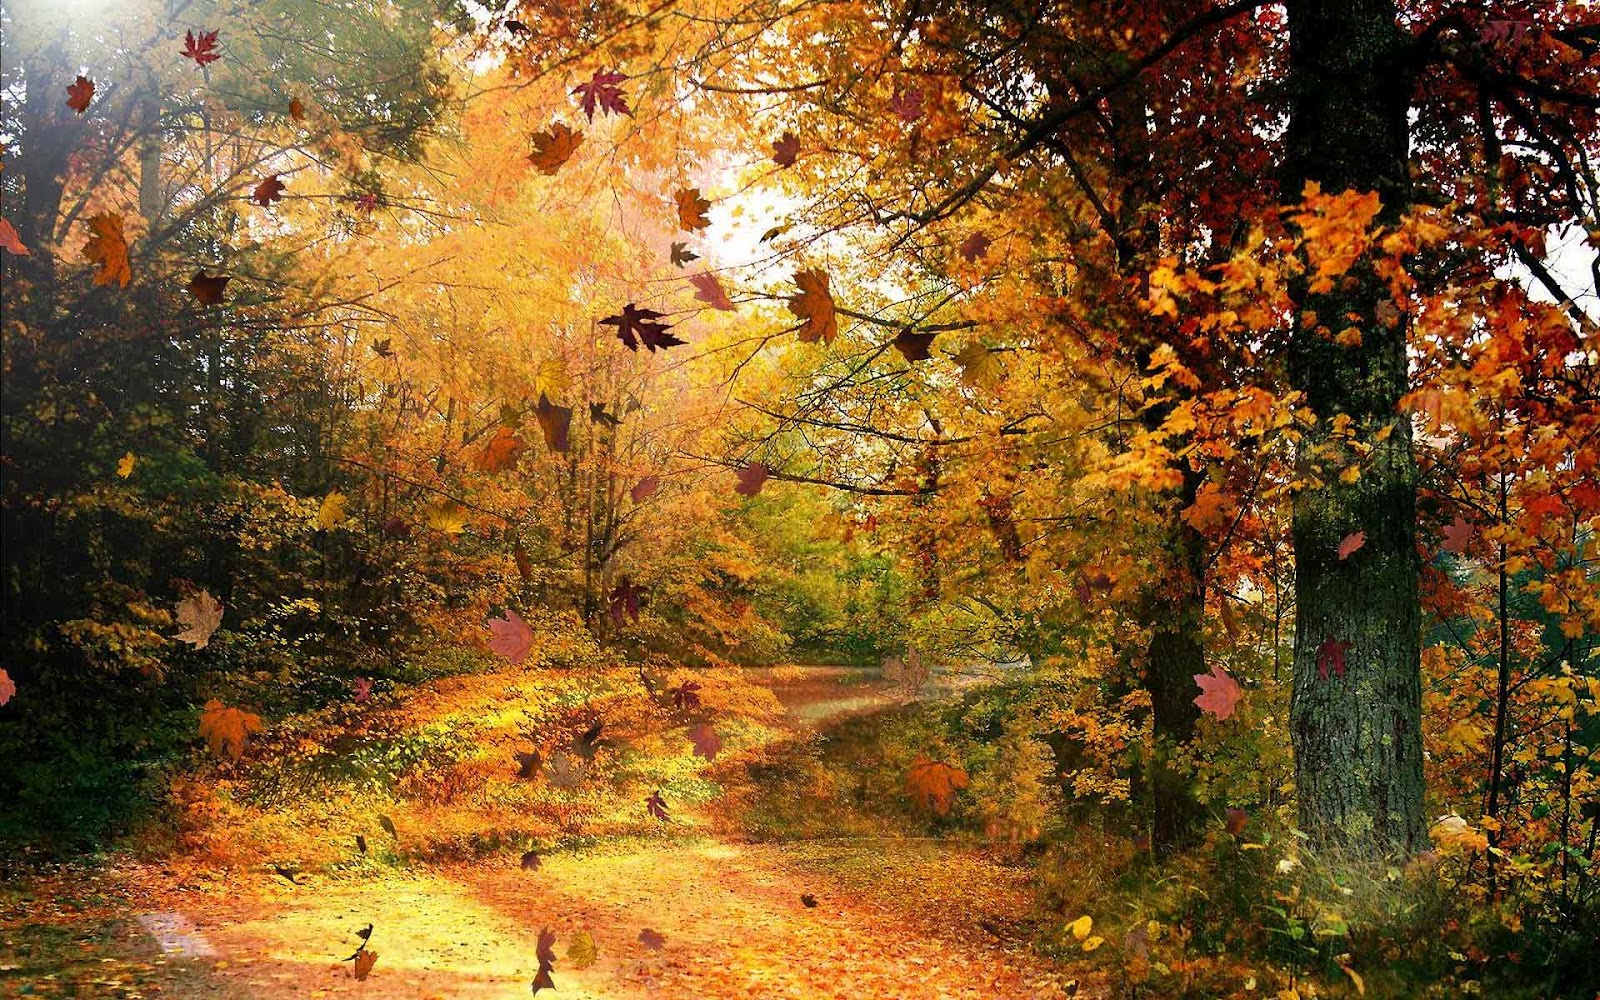 http://1.bp.blogspot.com/-eN8QKBUPndQ/UEuMTYA8W8I/AAAAAAAAG-o/p22iiA1IiZI/s1600/hd-prachtige-herfst-achtergrond-met-bomen-en-een-weg-bezaaid-met-herfstbladeren-wallpaper-foto.jpg